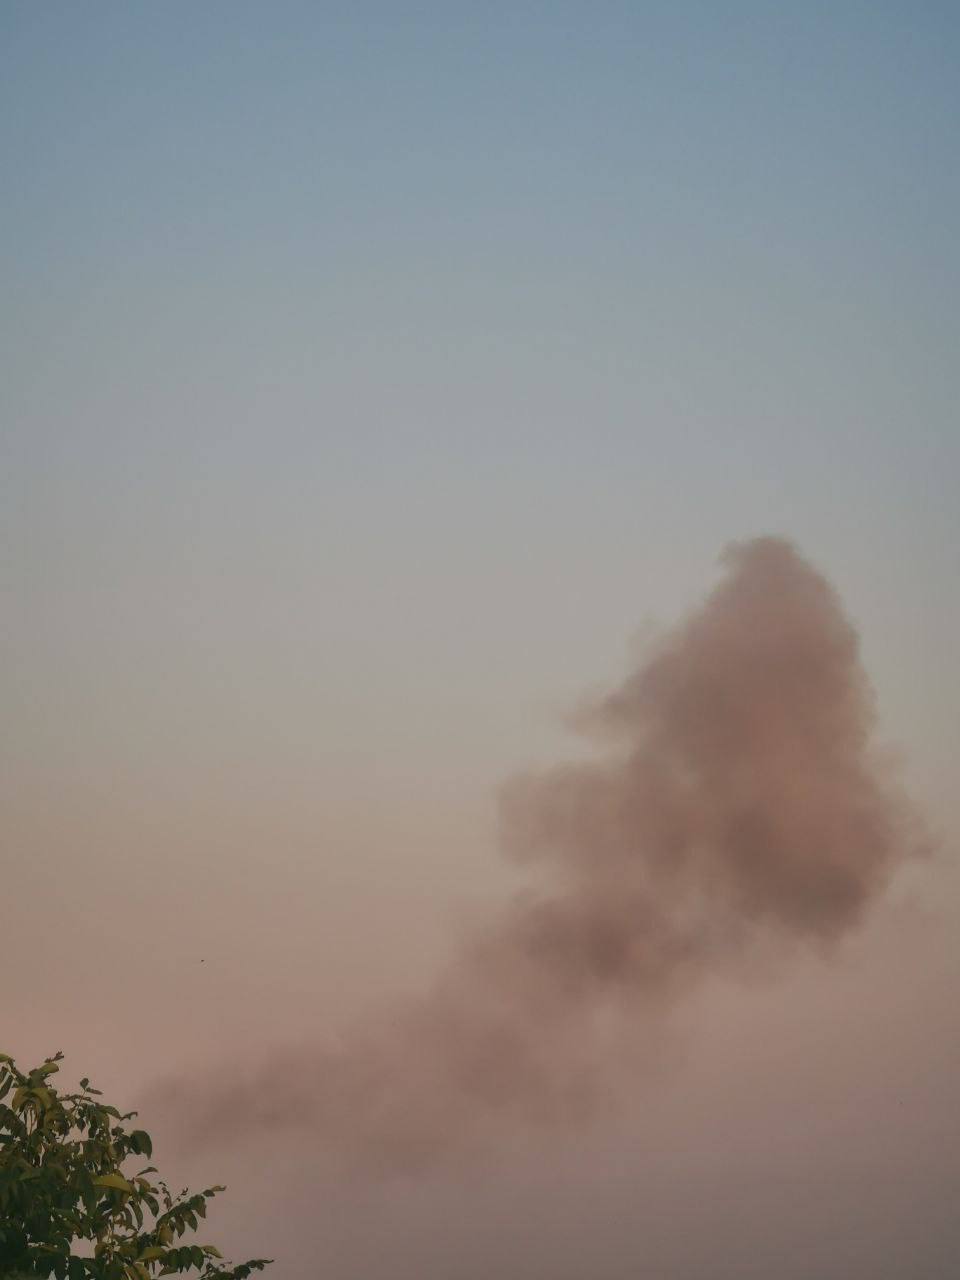 Після підриву частини ракети в небо здійнявся дим.